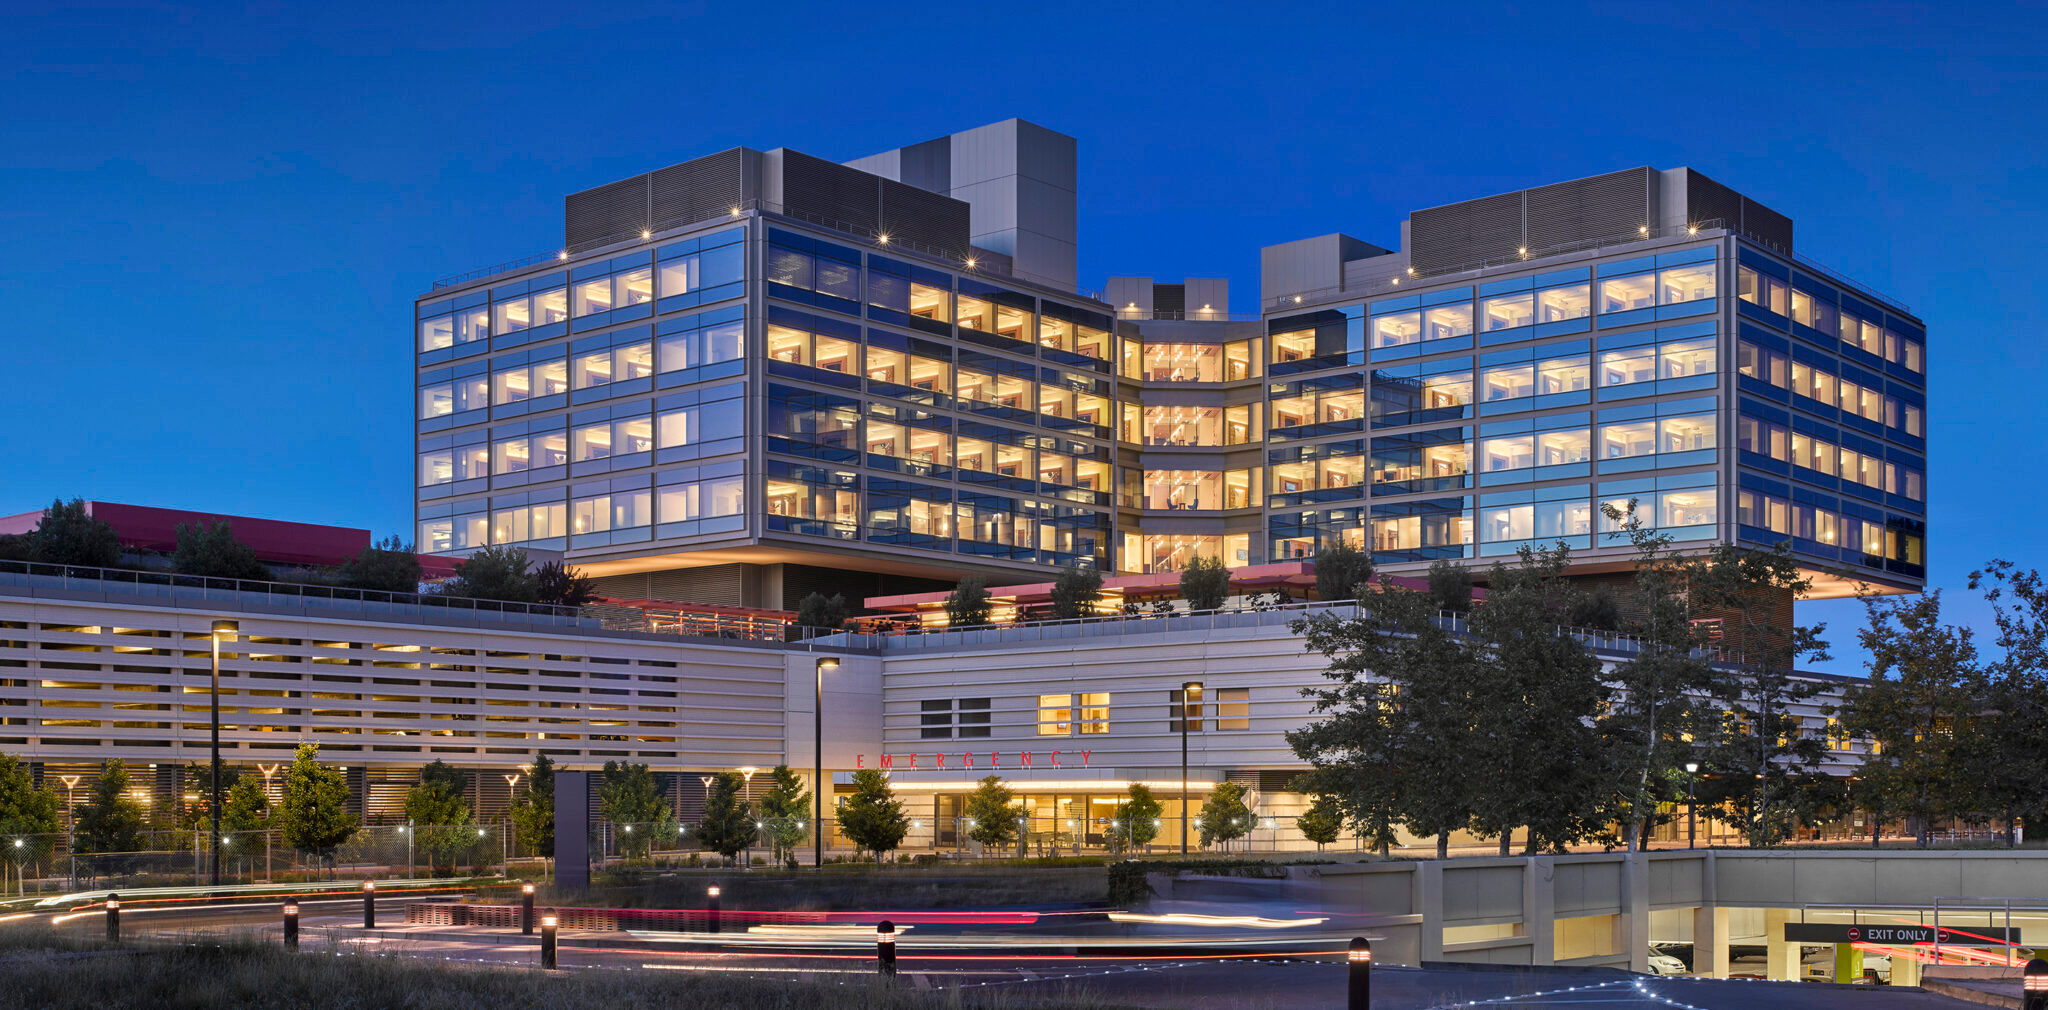 Stanford Hospital by Perkins Eastman team